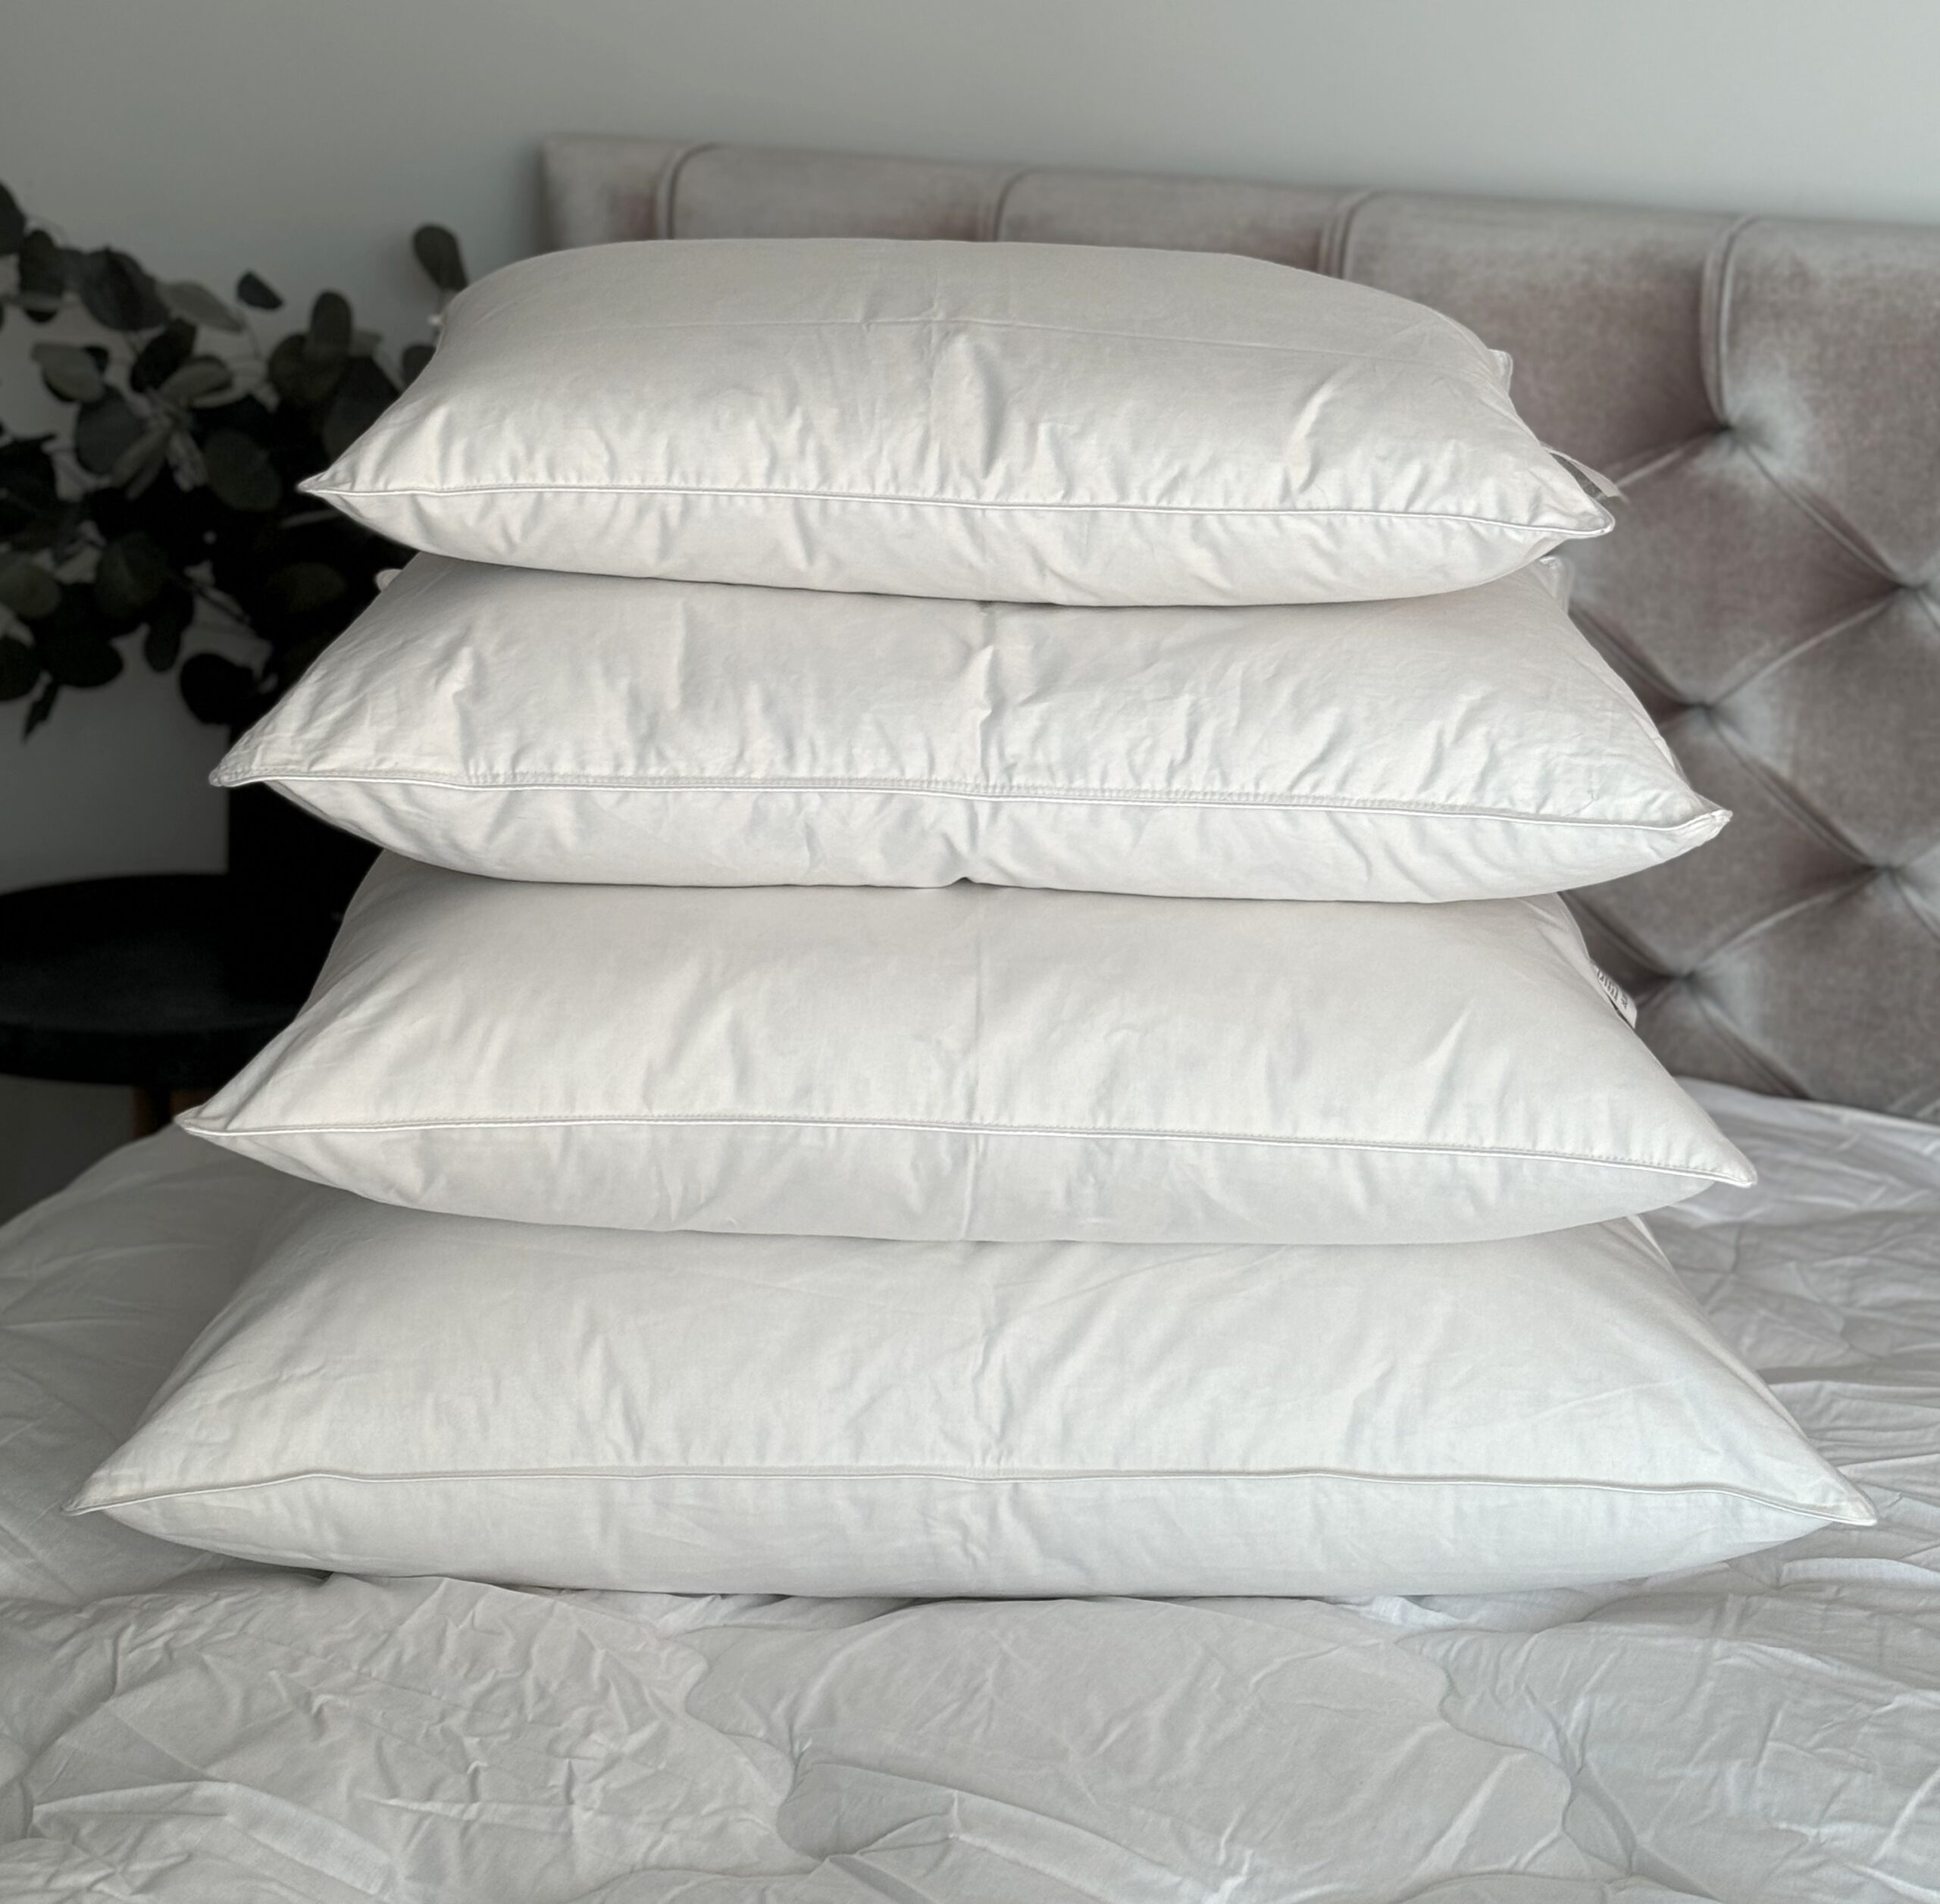 Pūkinė pagalvė 70% žąsų pūkų “Limited edition” įvairių dydžių